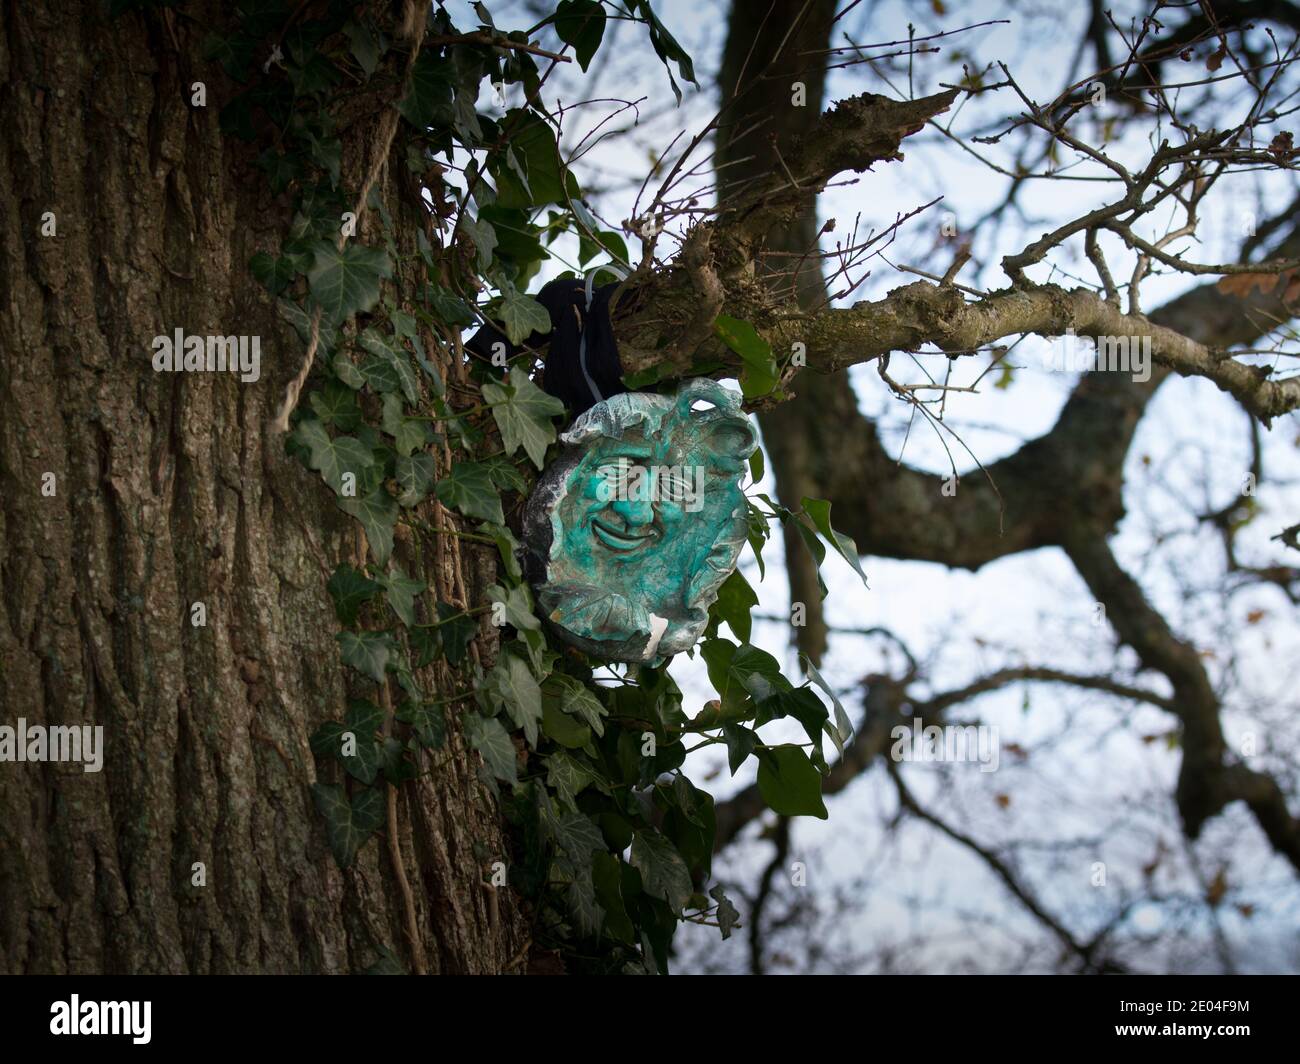 Immagine uomo verde in un albero di quercia a Silchester o Calleva Atrebatum città romana. Regno Unito. Foto Stock